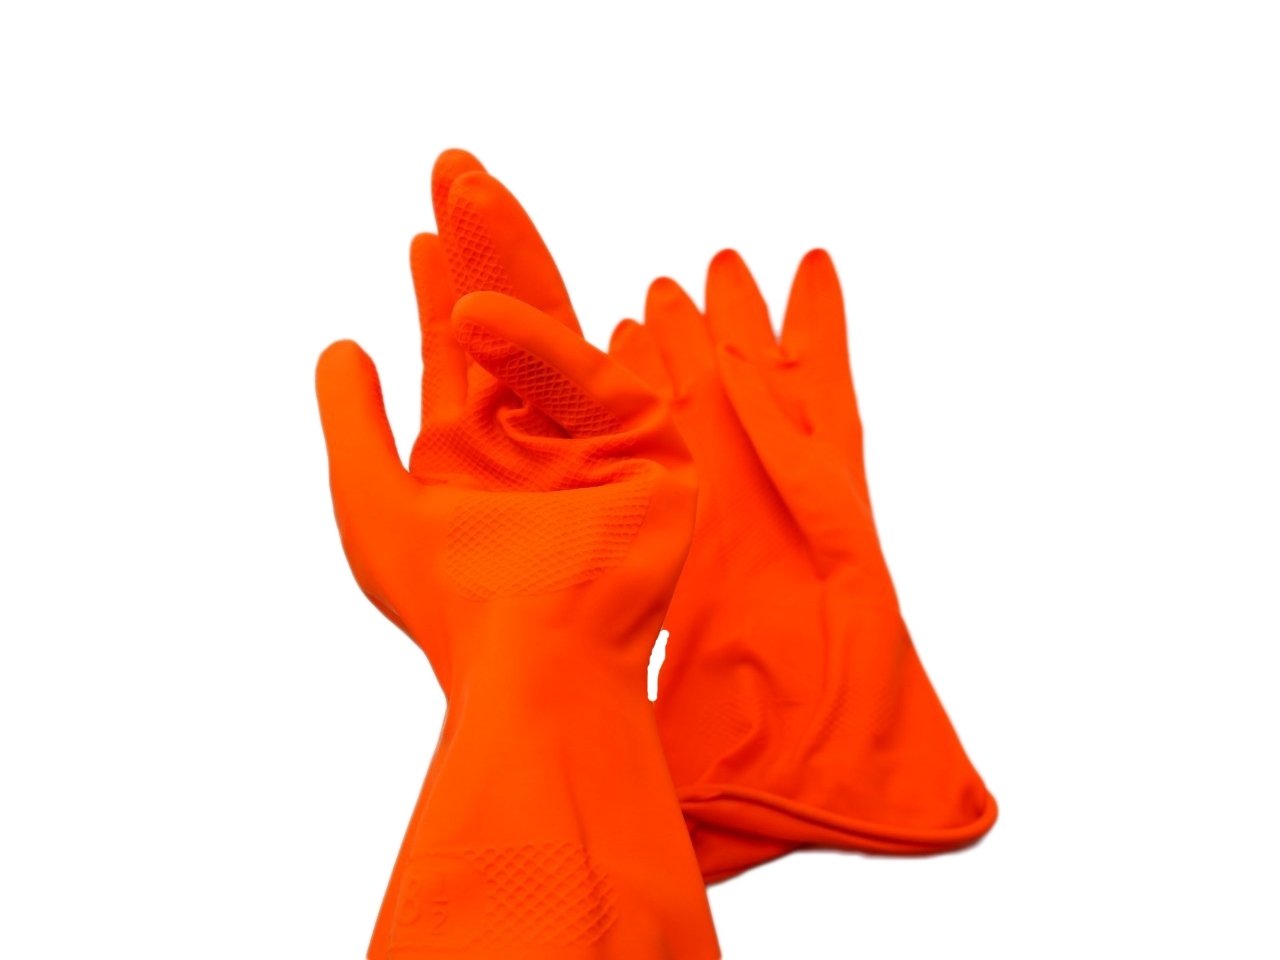 ถุงมือยางสีส้ม  SIZE M ขนาด 8 นิ้ว